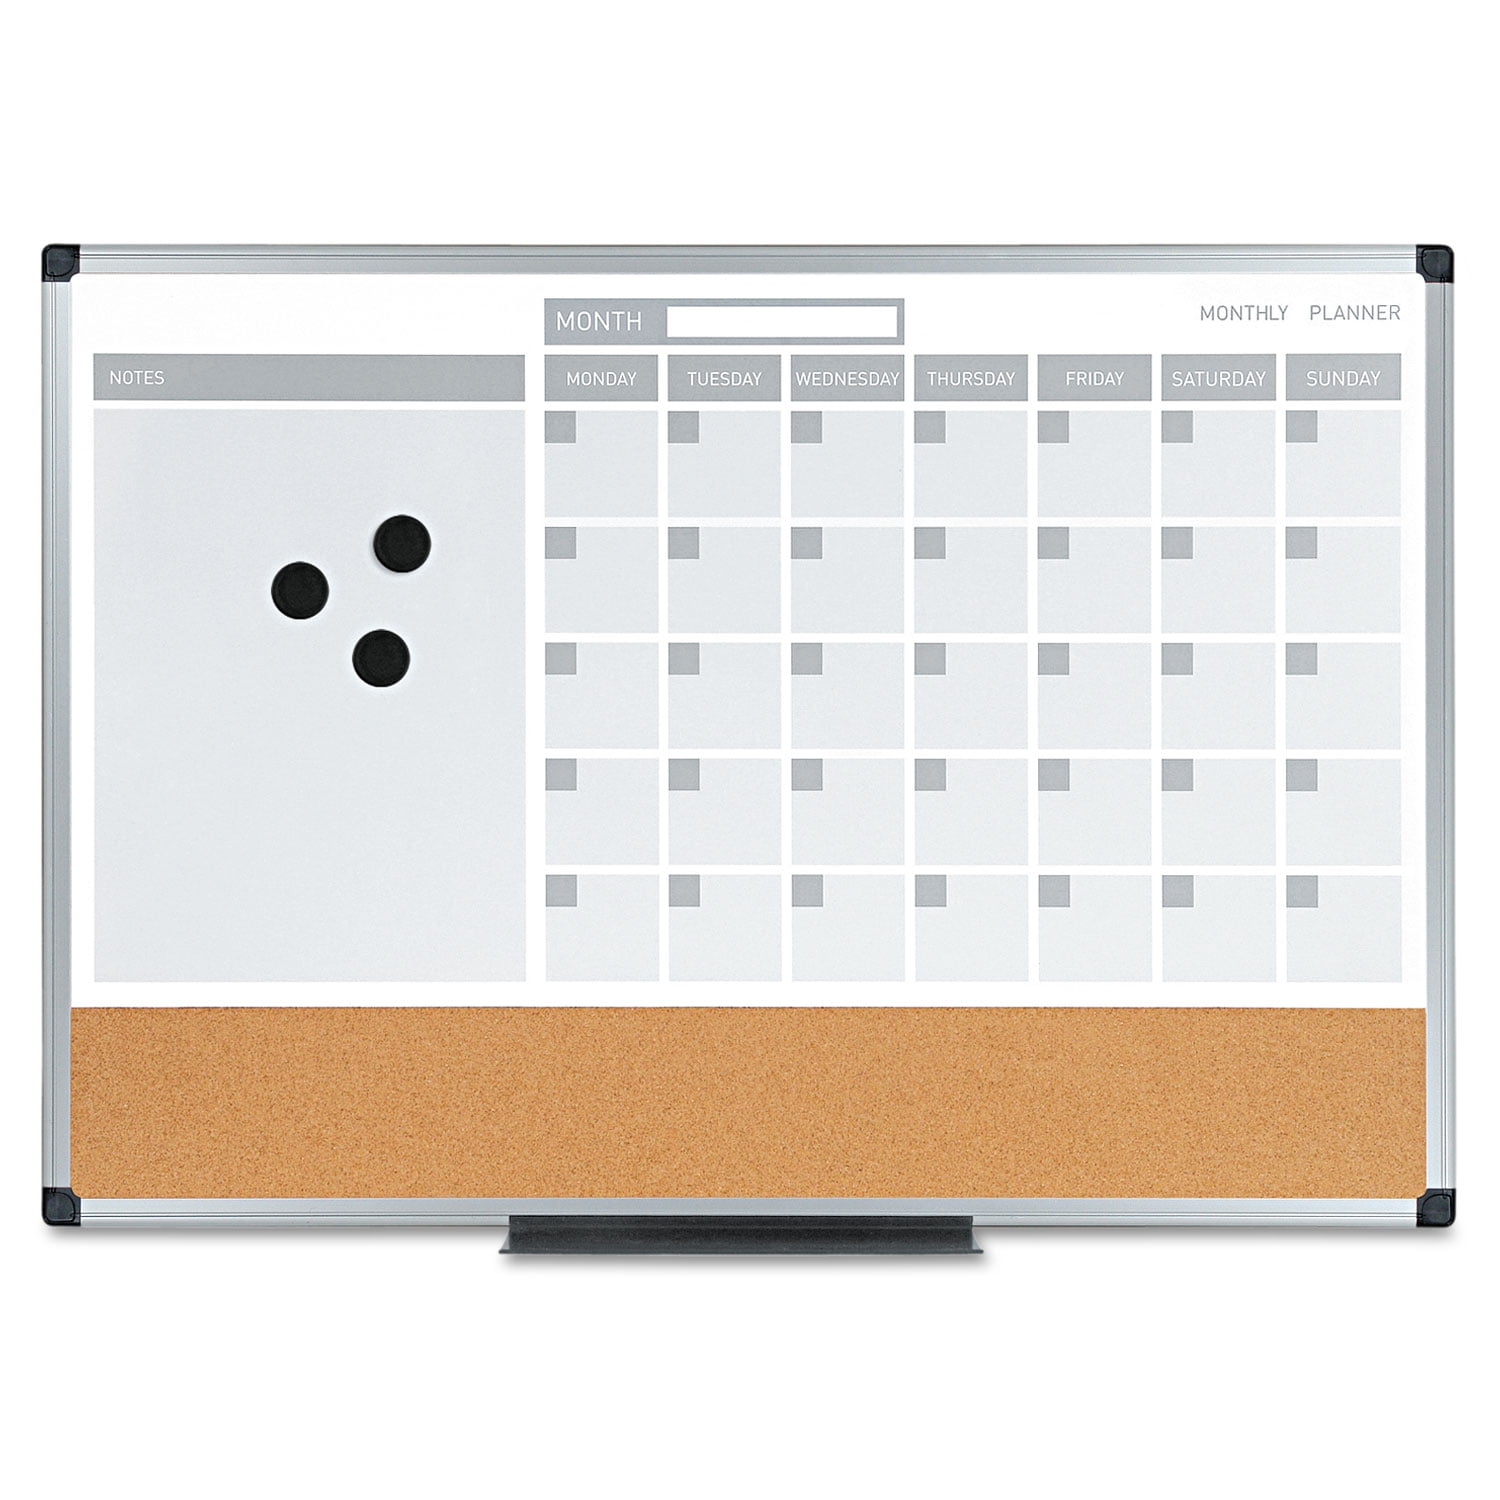 1/2 Corkboard & Whiteboard 24 x 18 Inch Dry Erase & Cork Bulletin Board Set 